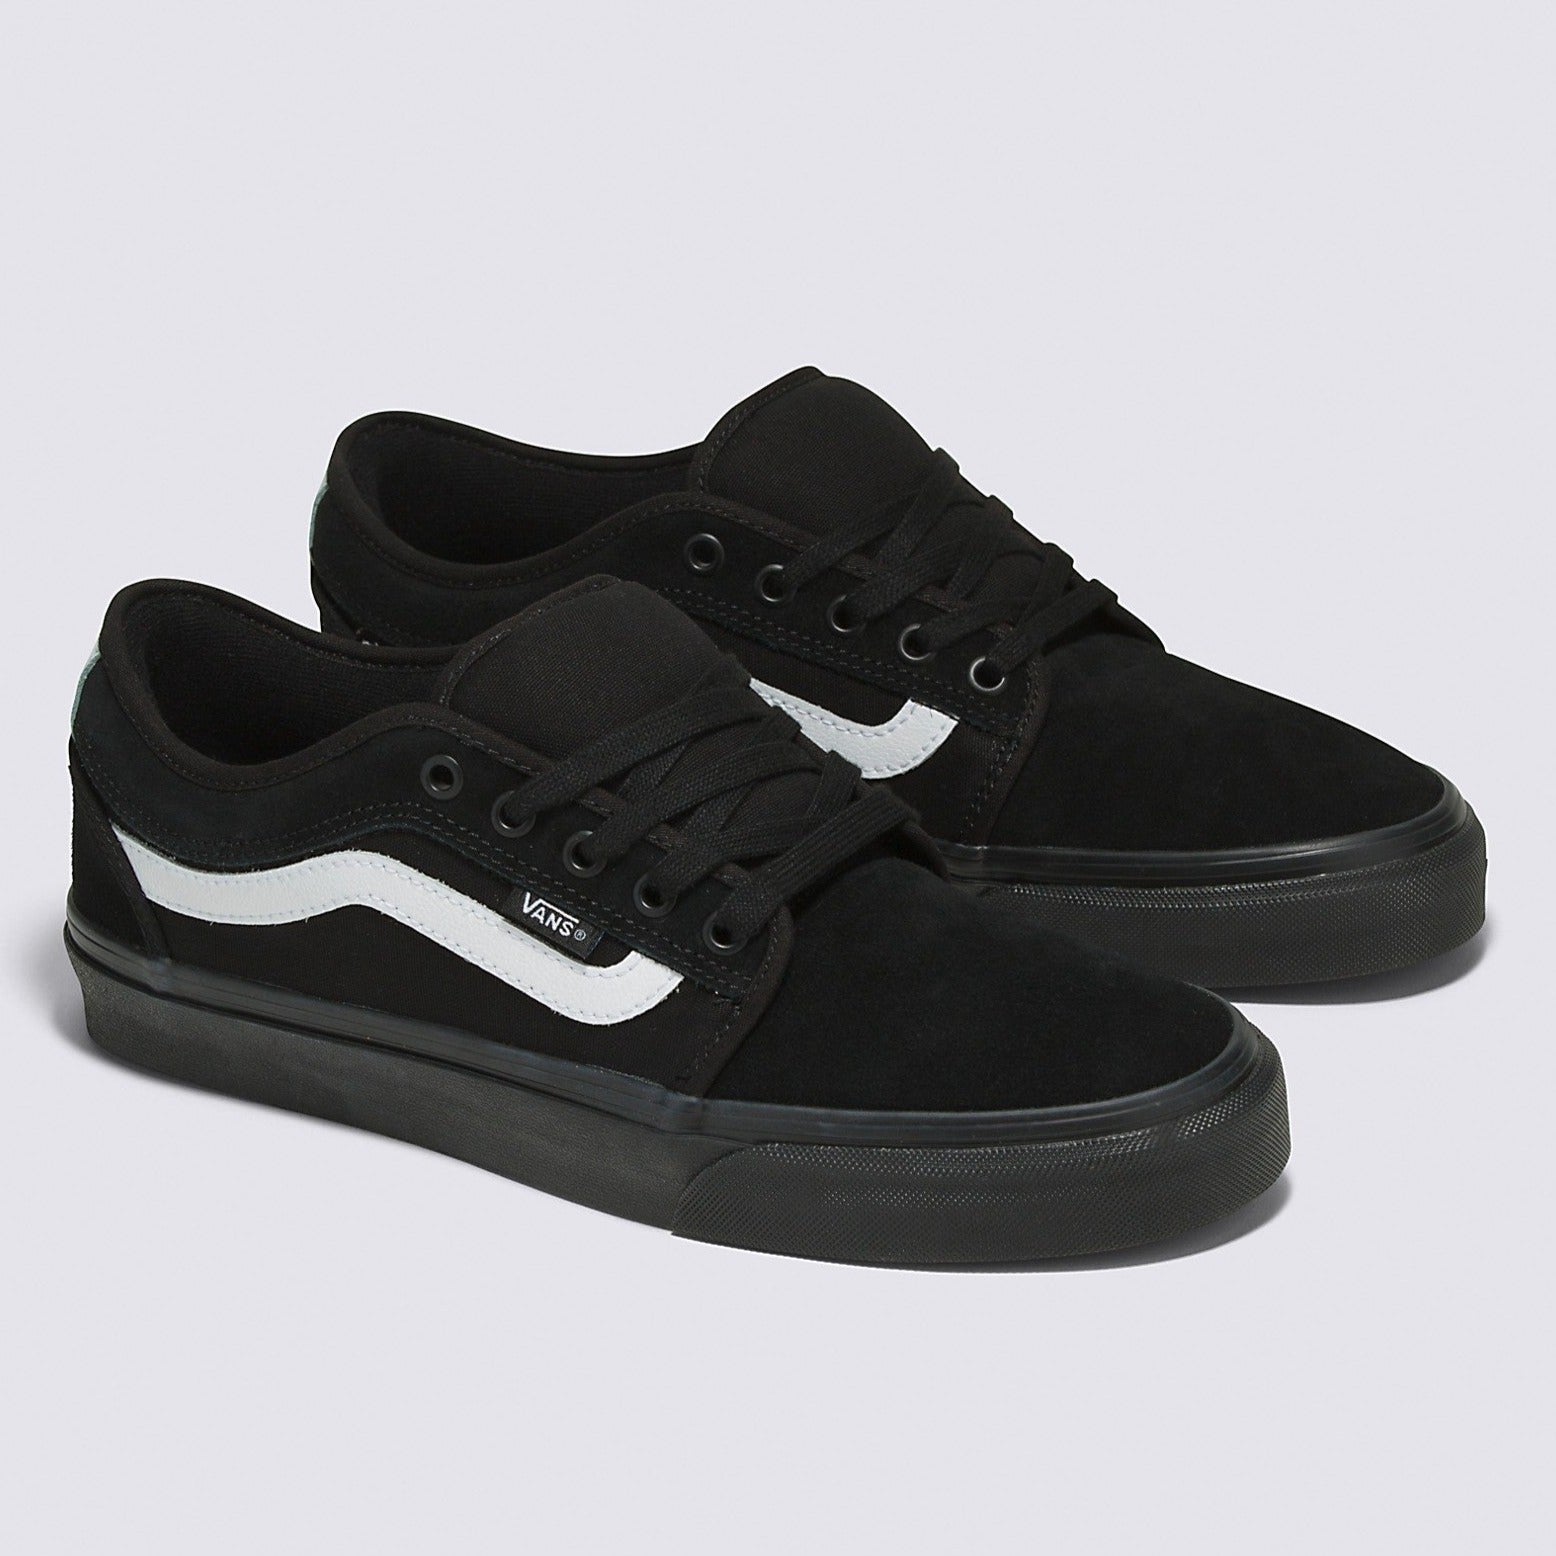 Black/Black/White Chukka Low Sidestripe Vans Skate Shoe